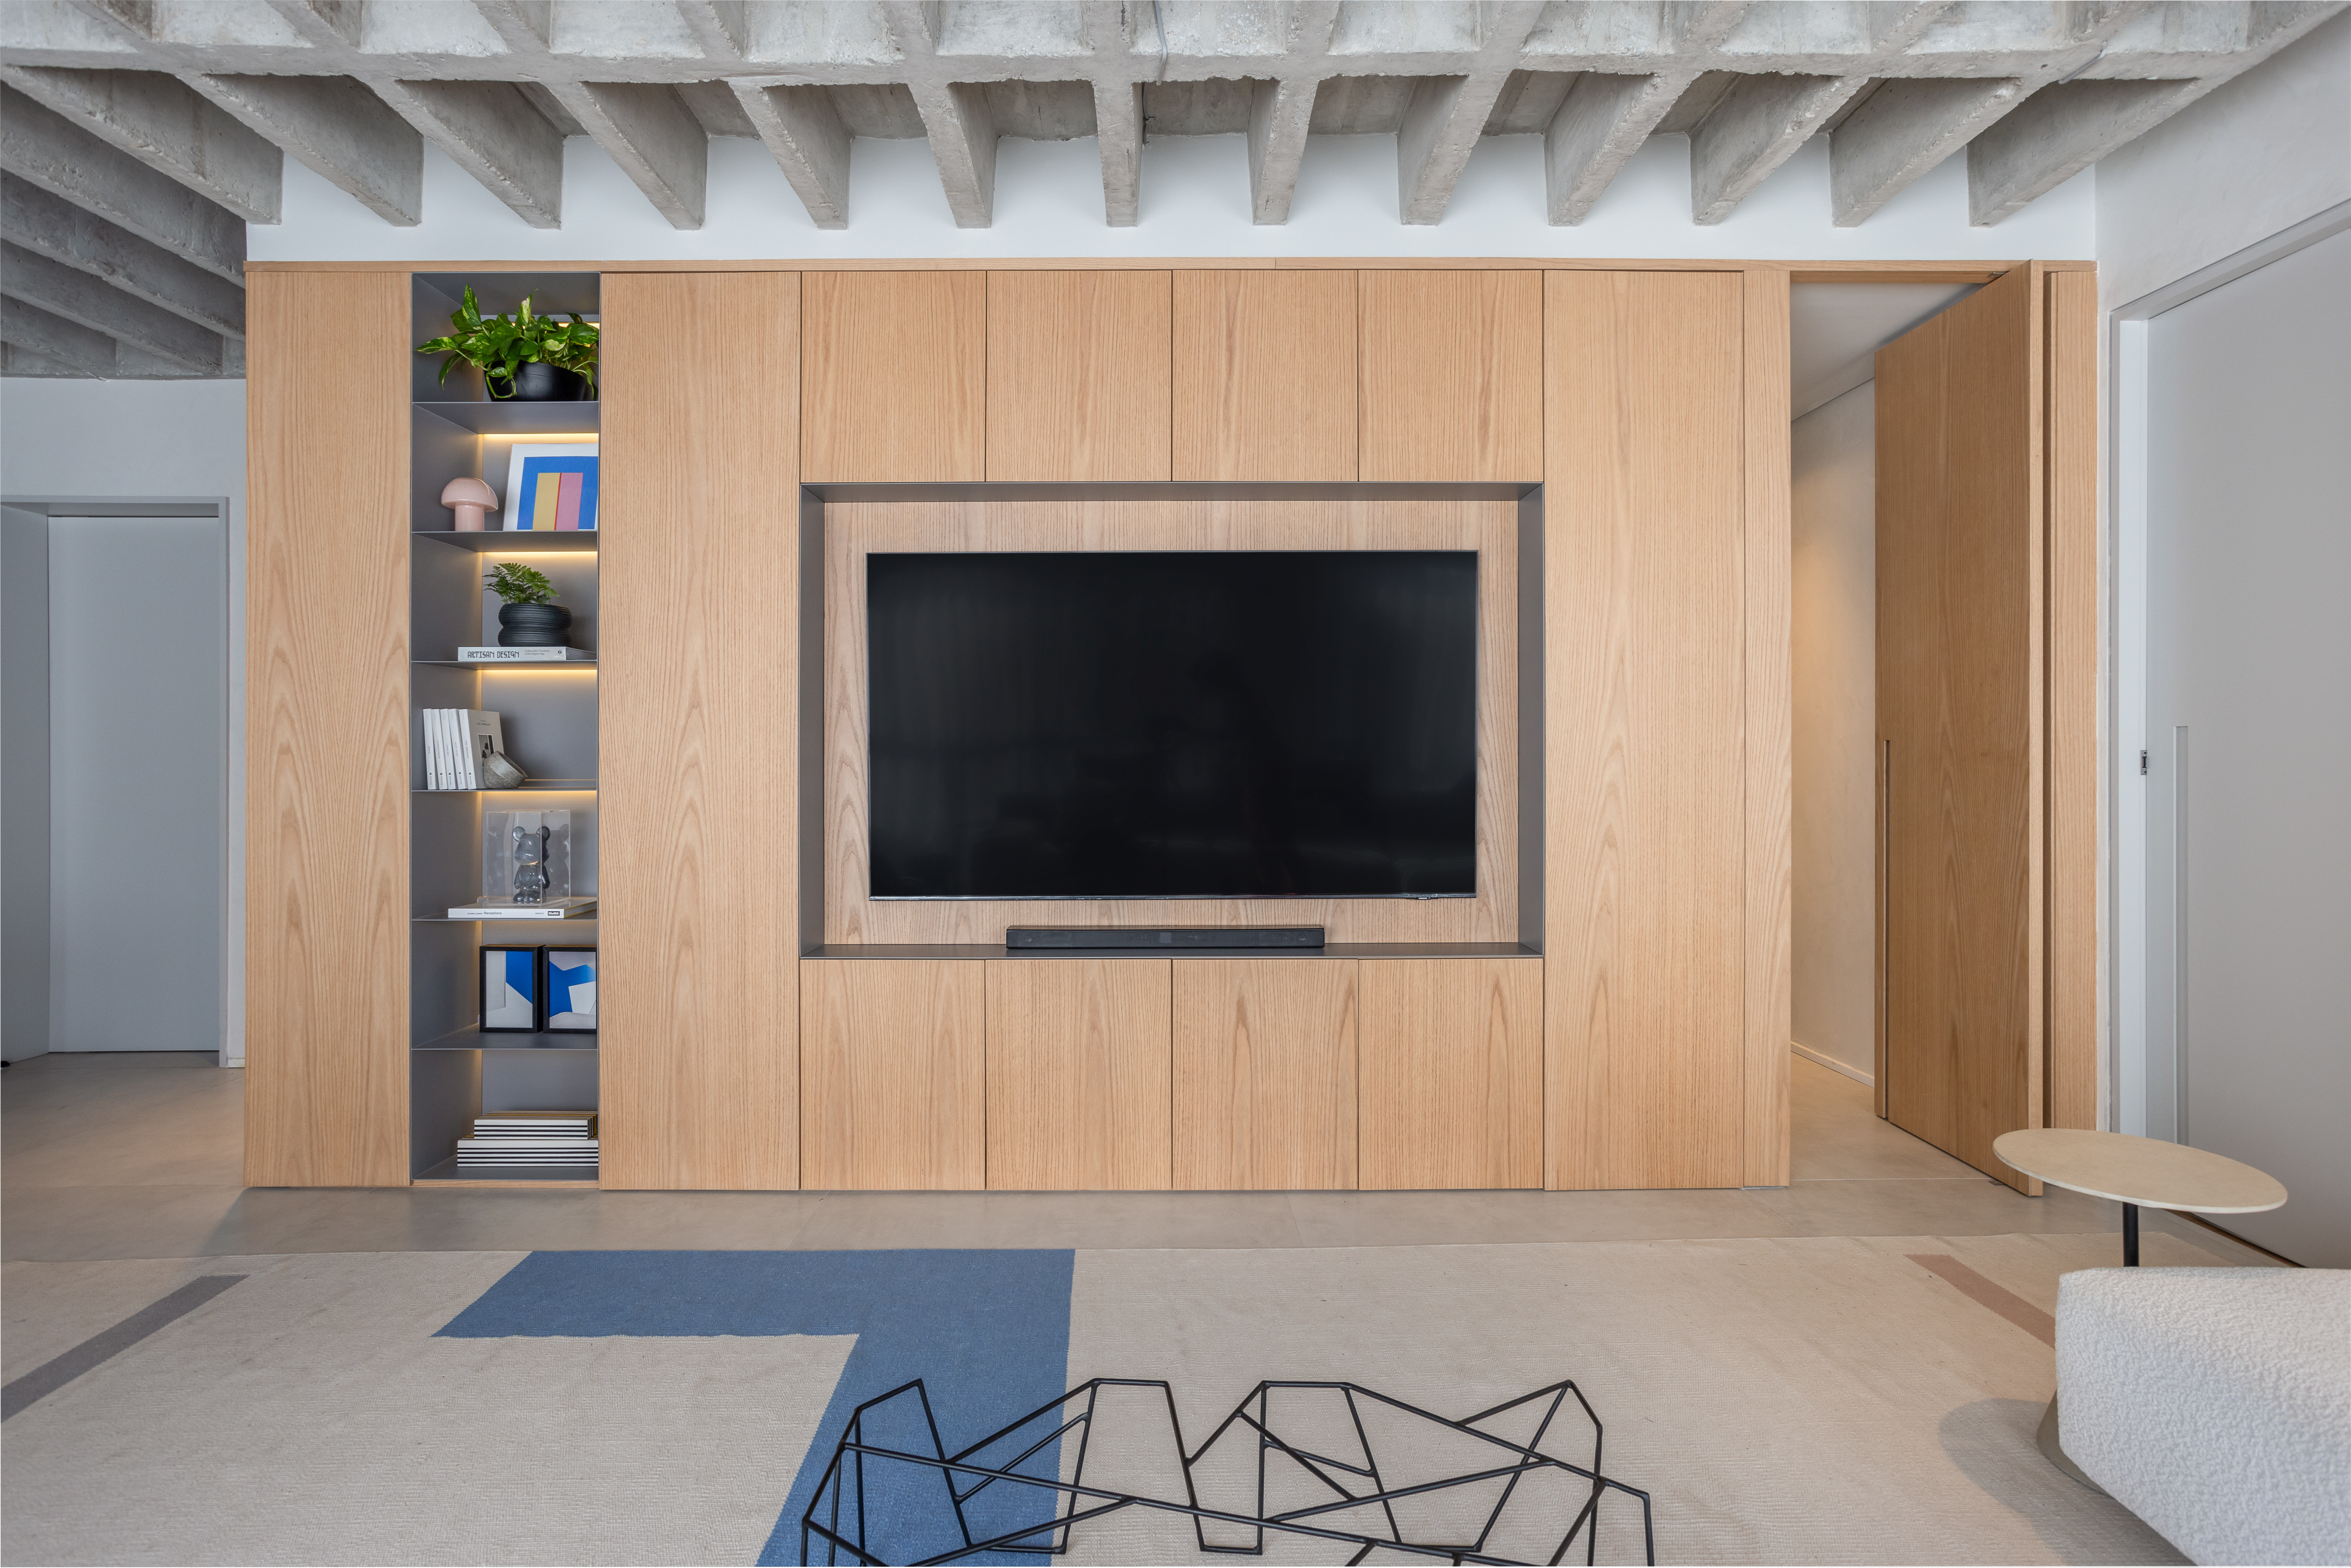 Laje de concreto, mesa em balanço e cozinha azul marcam apê de 115 m². Projeto do escritório Si Saccab. Na foto, marcenaria com porta camuflada.